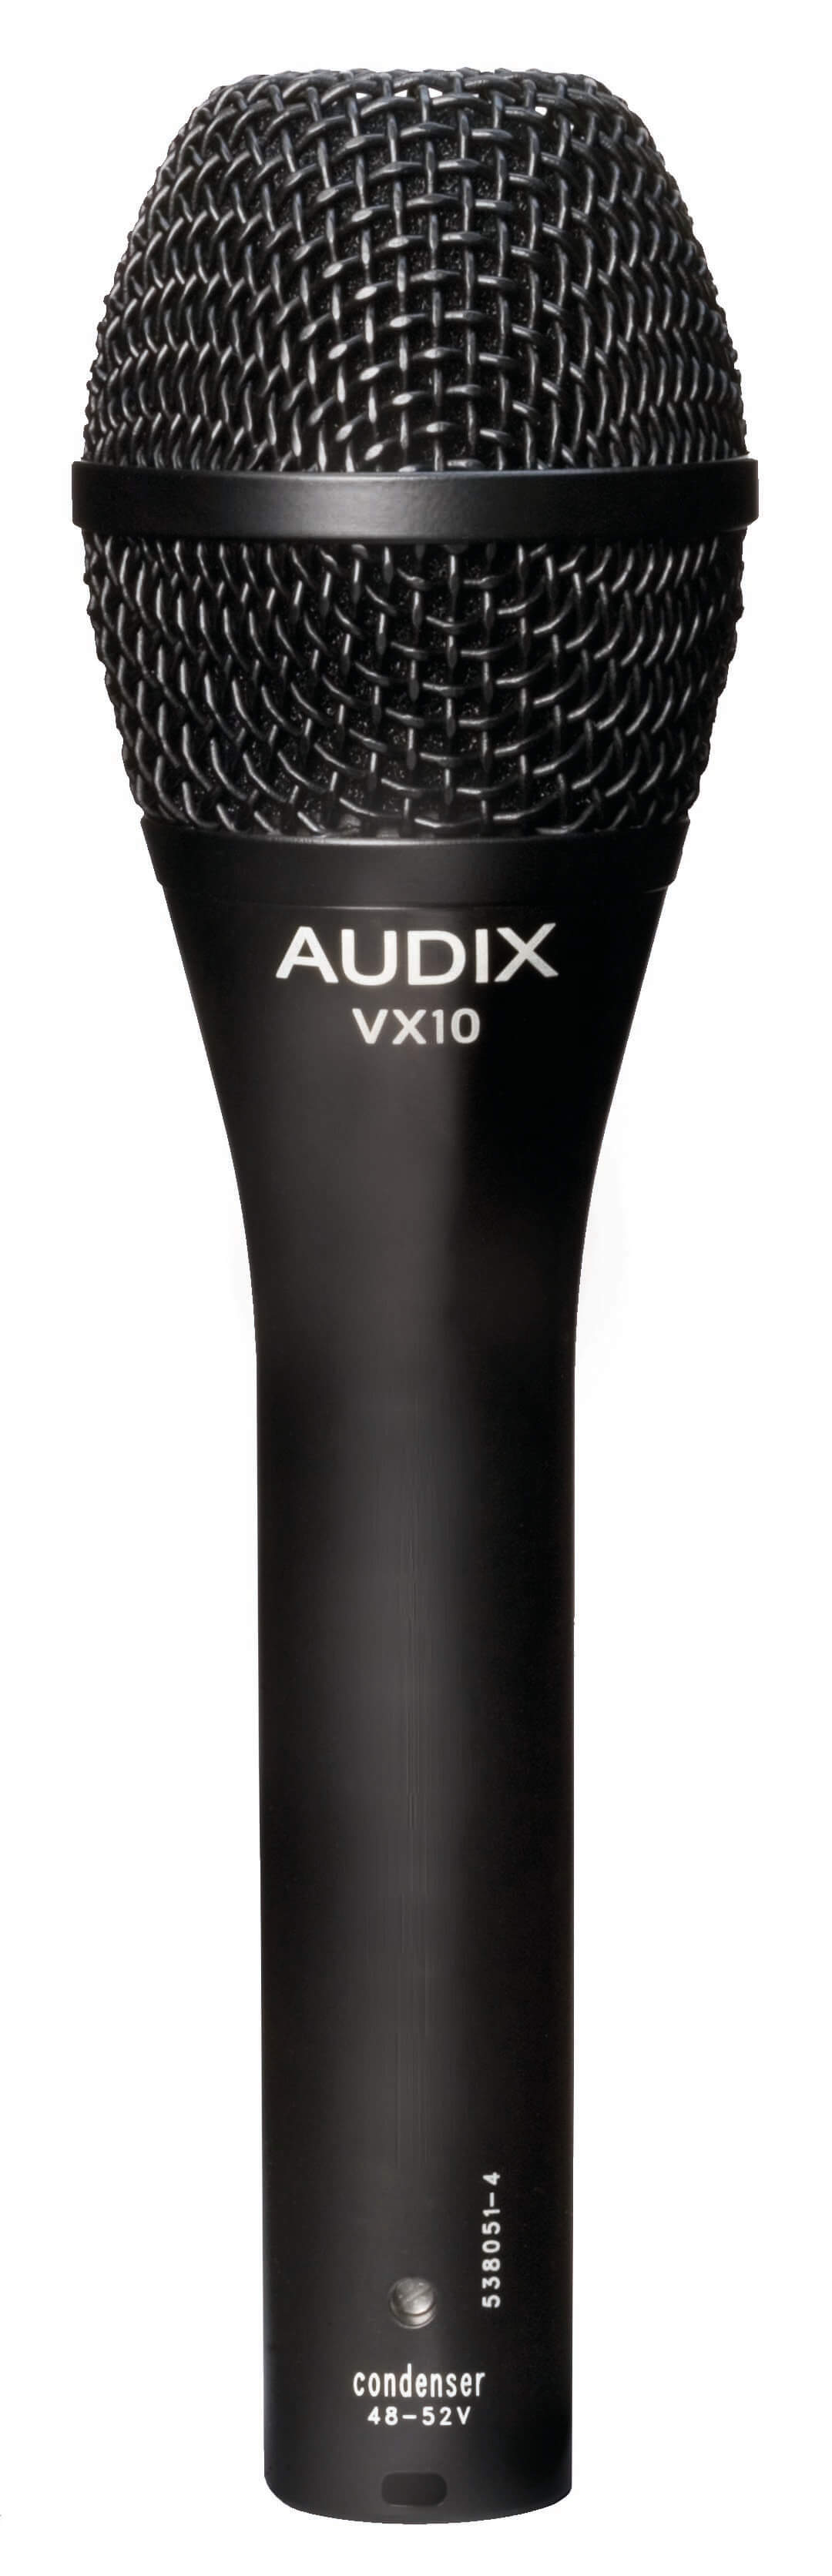 Micrófono dinámico vocal Audix VX10